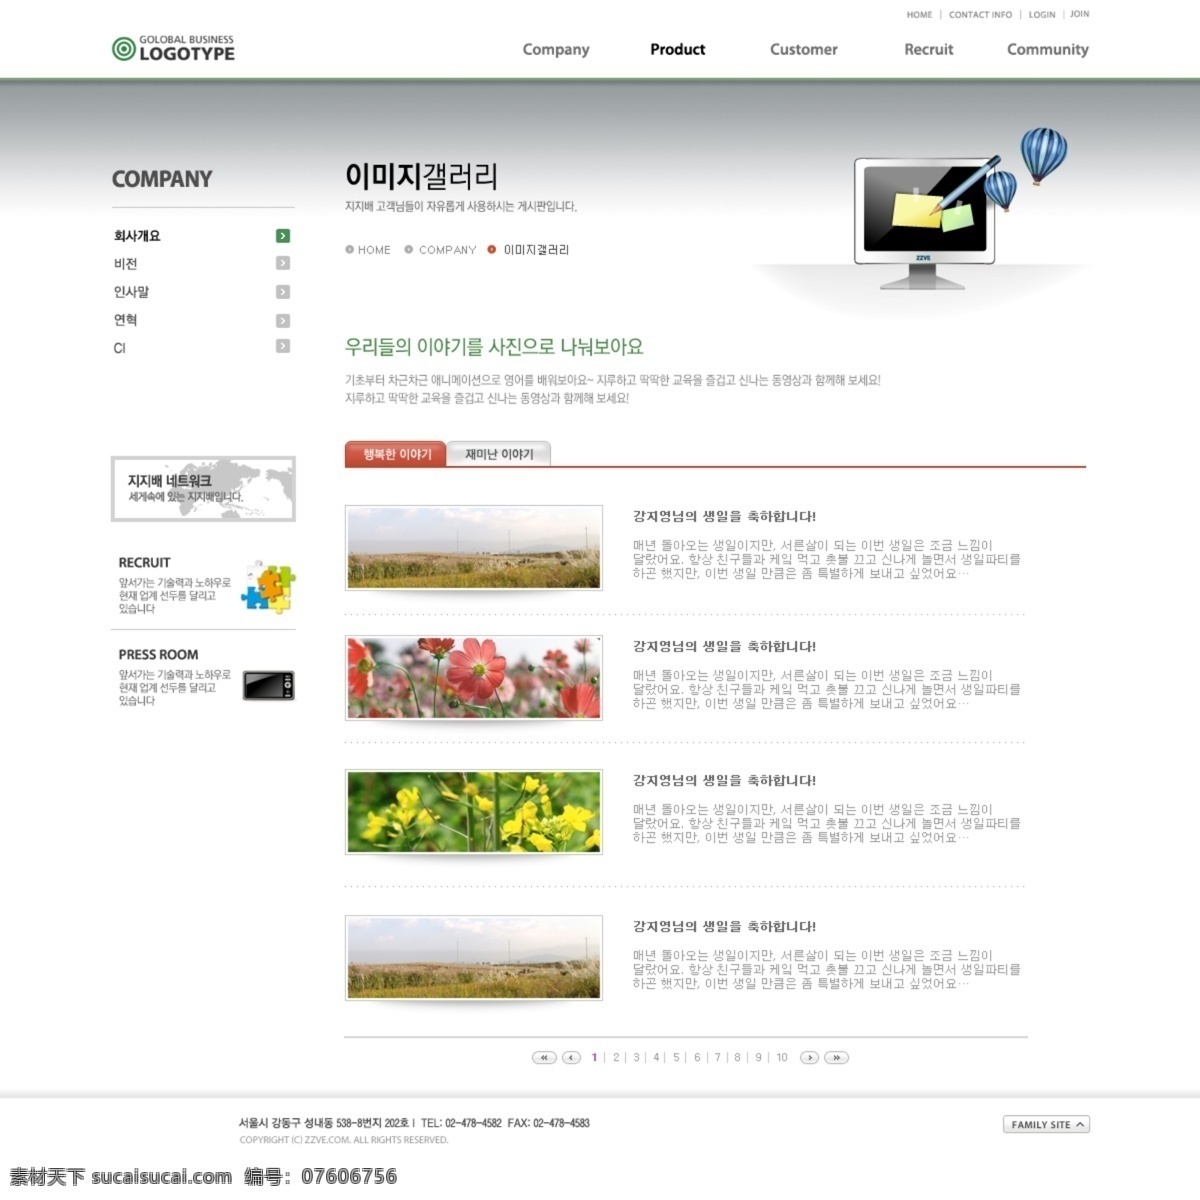 简约 创意 网站 模板 版式设计 创意设计 公司网站 韩国模板 界面设计 立方体 企业网站 世界地图 网页版式 网页布局 网页模板 网页界面 灰色系 网页素材